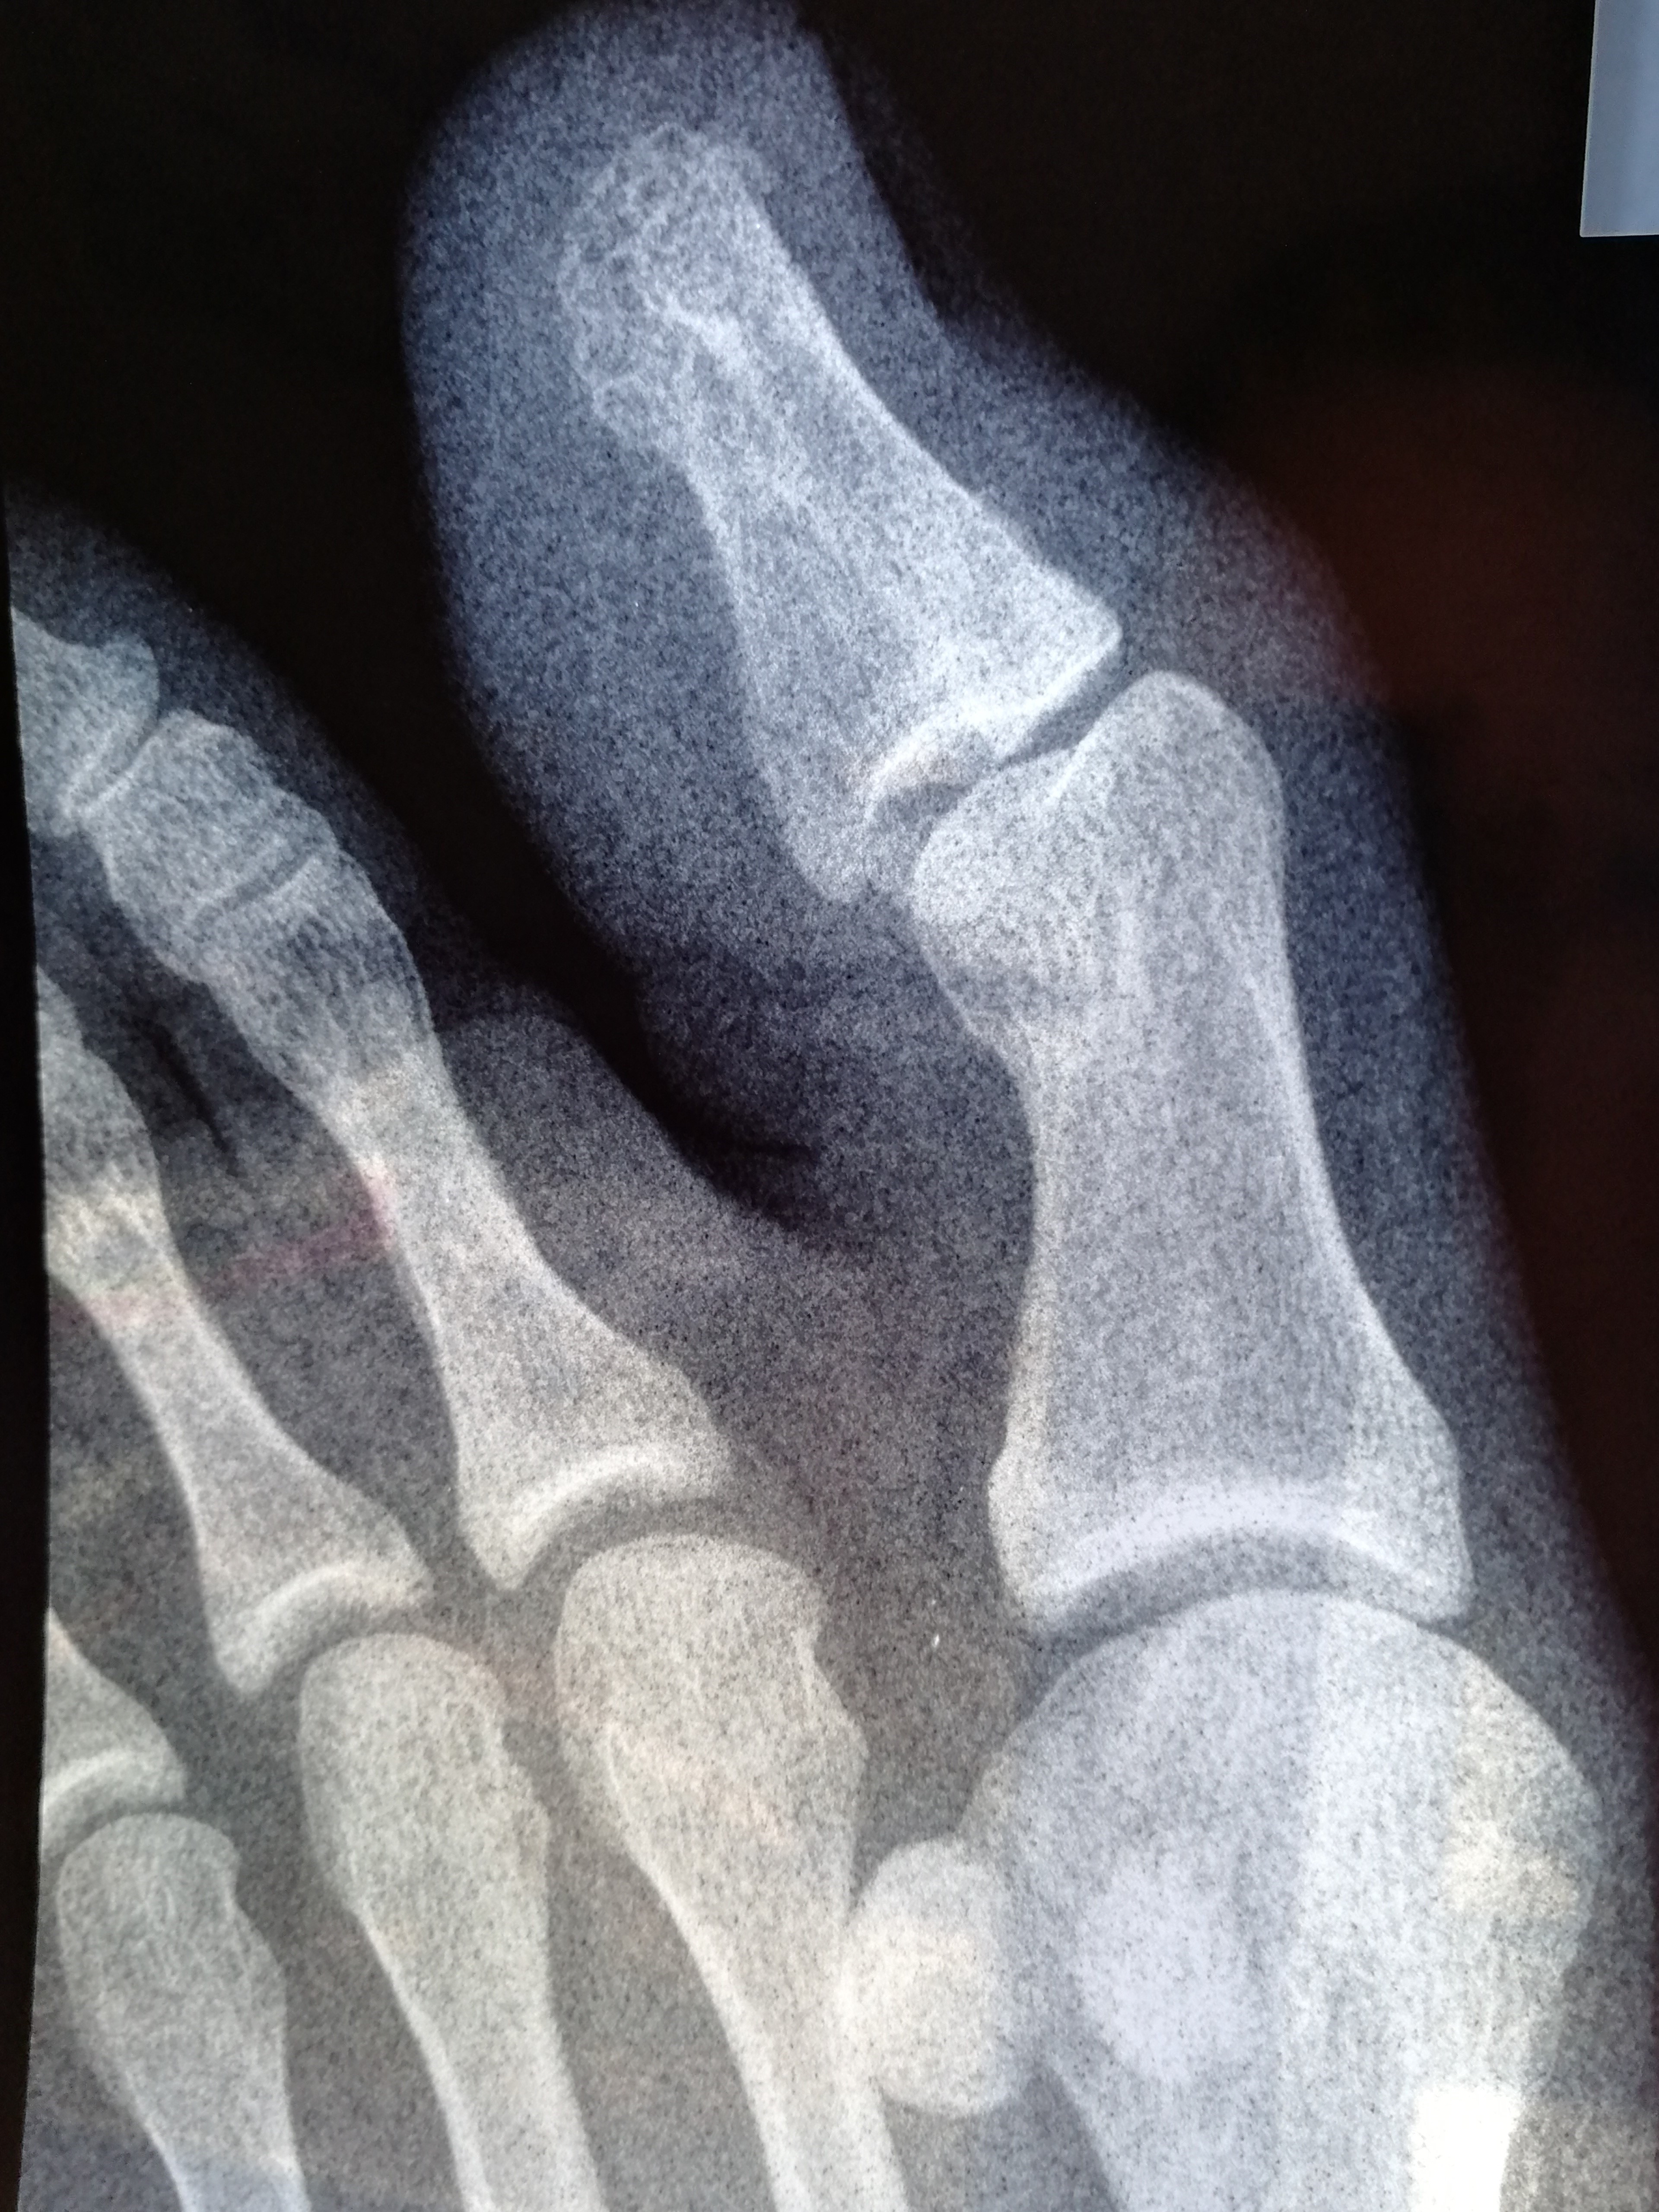 Ногтевой фаланги пальца ноги. Краевой перелом проксимальной фаланги. Краевой перелом проксимальной фаланги 1 пальца стопы рентген. Краевой перелом фаланги рентген. Краевой перелом фаланги пальца рентген.